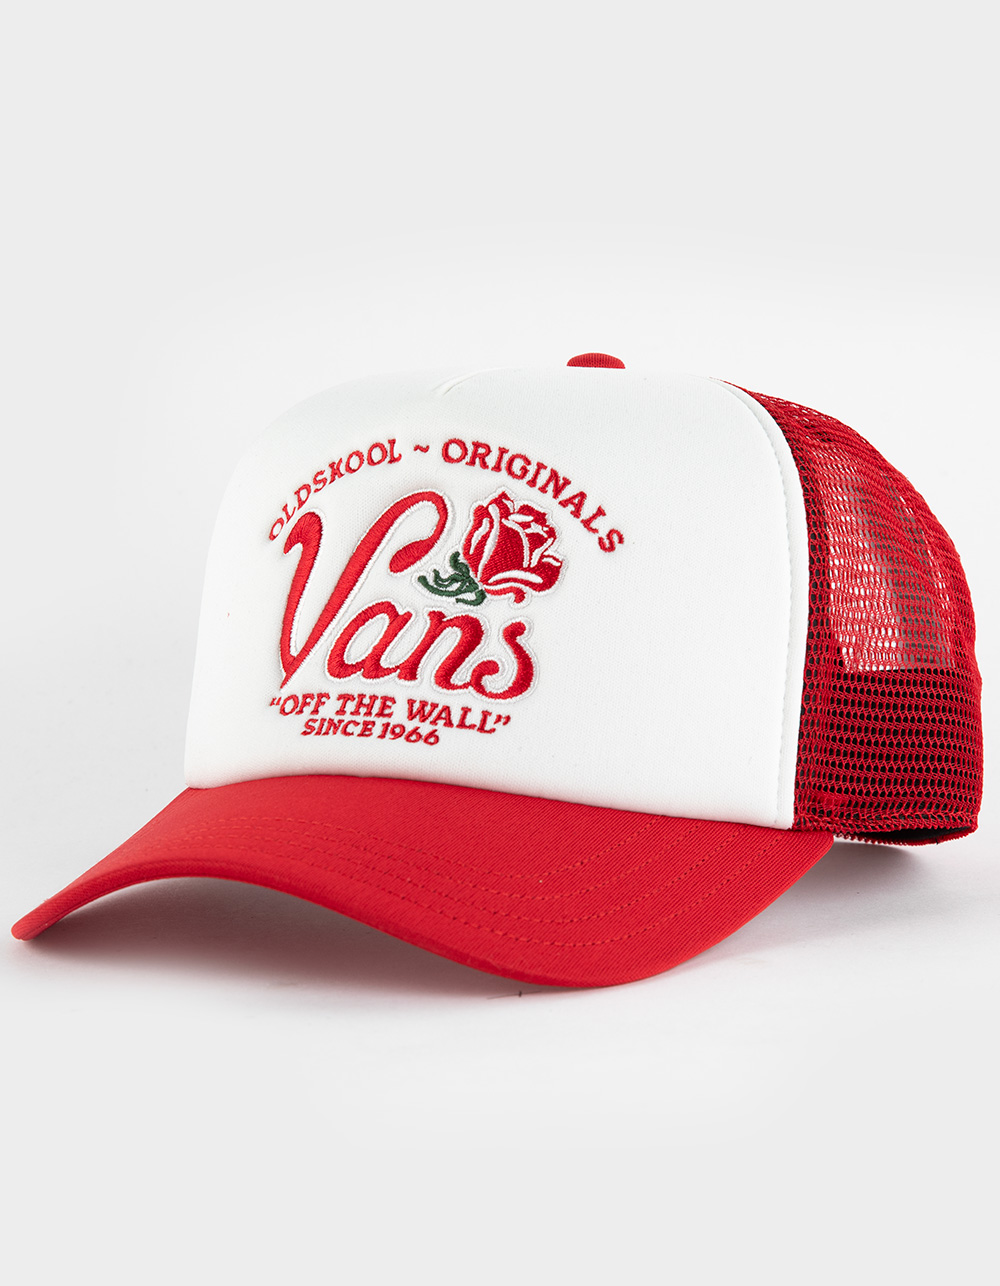 VANS Winding Road Mens Trucker Hat - RED COMBO